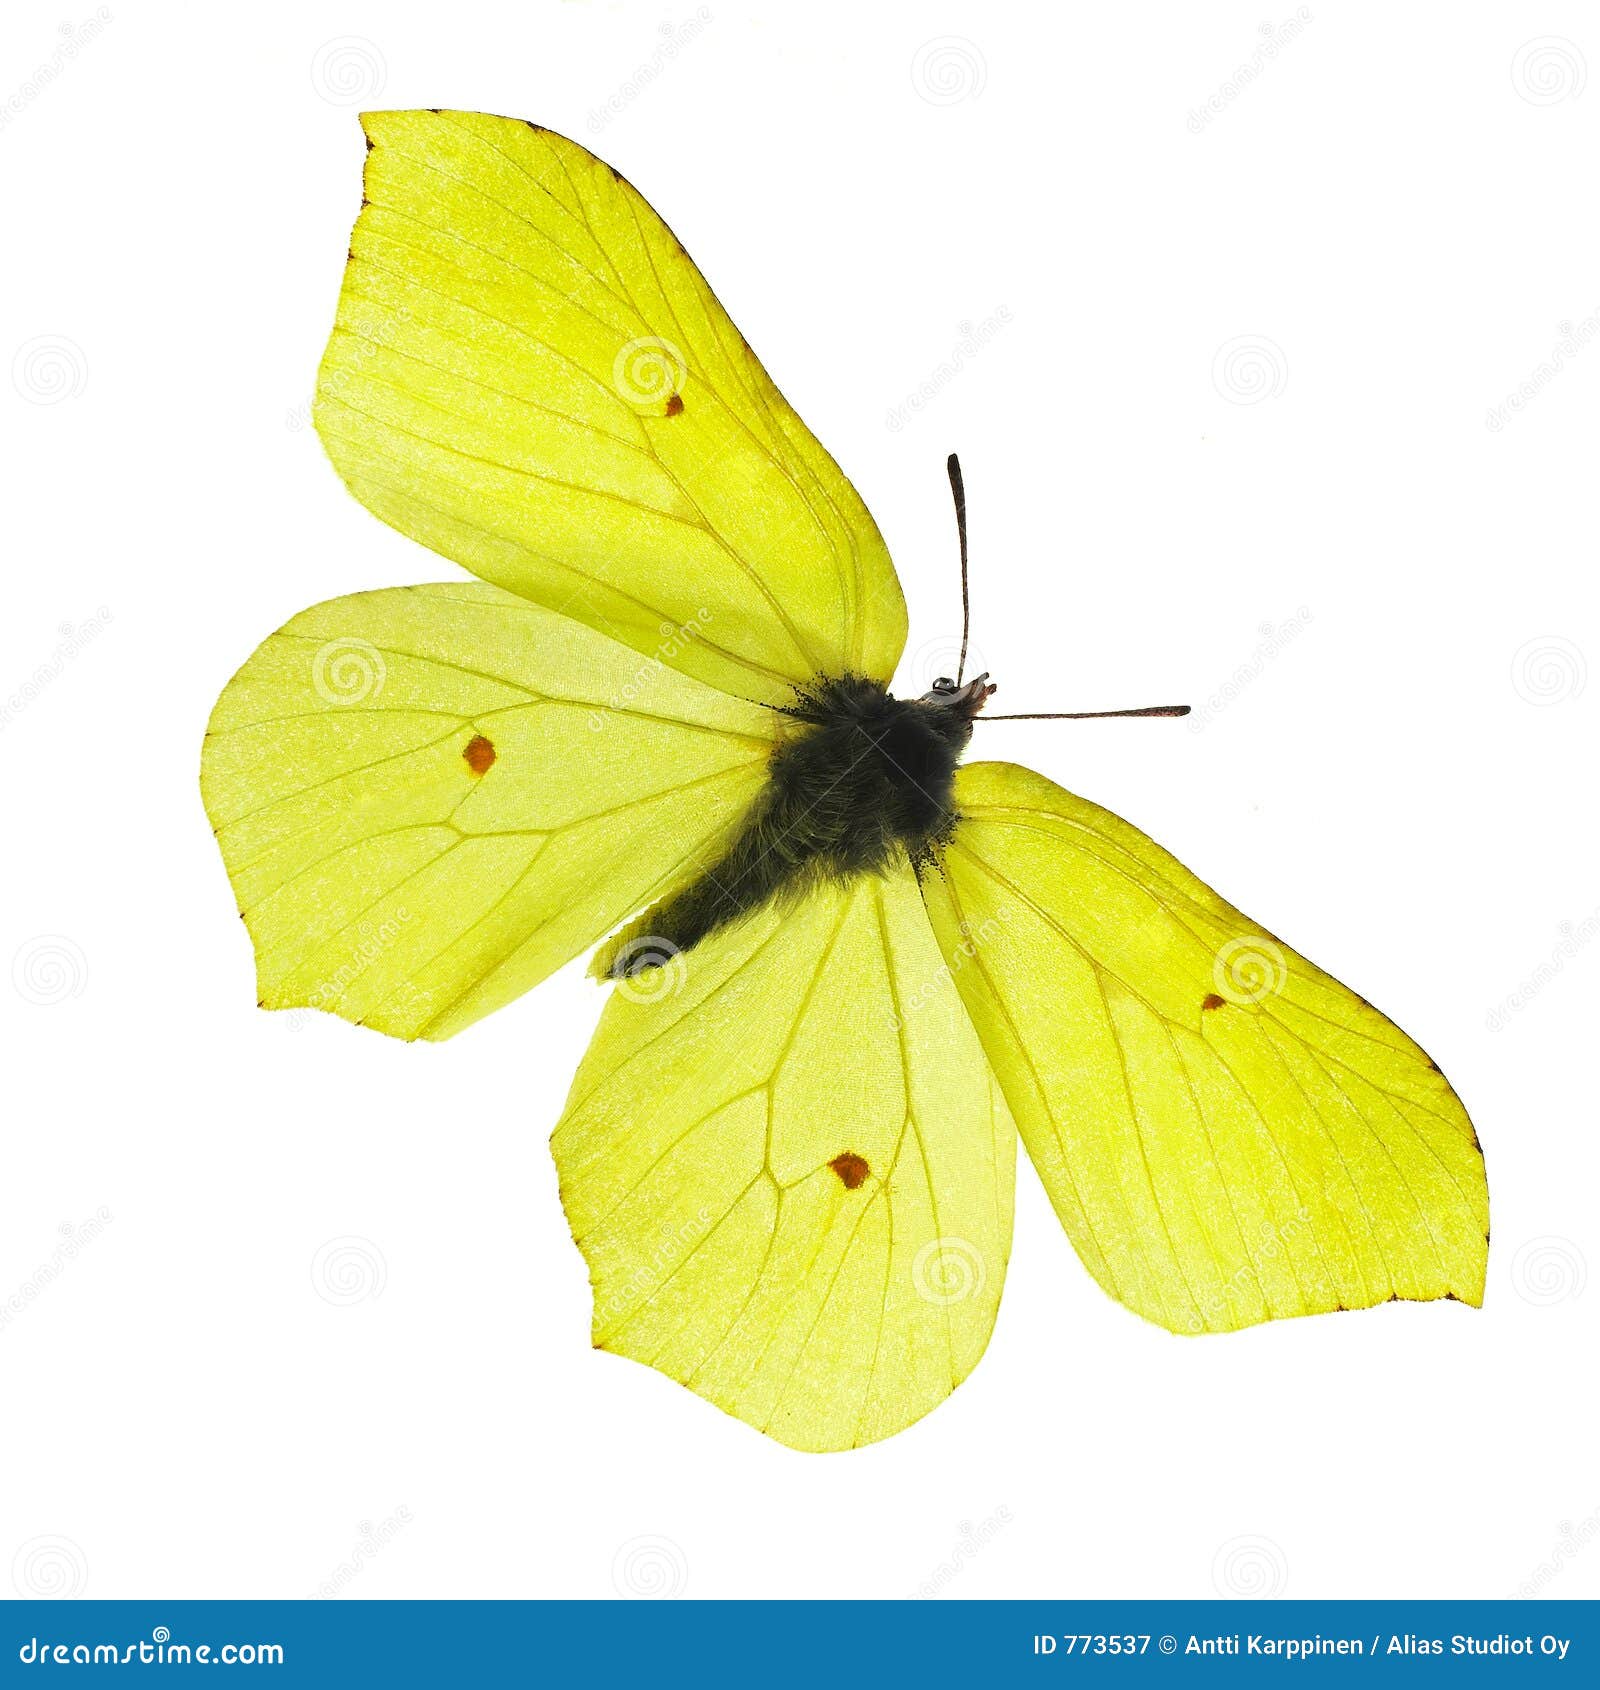 Бабочка лимонница рисунок. Бабочка лимонница крушинница. Жёлтая бабочка. Бабочка лимонница для детей. Жёлтая бабочка лимонница.